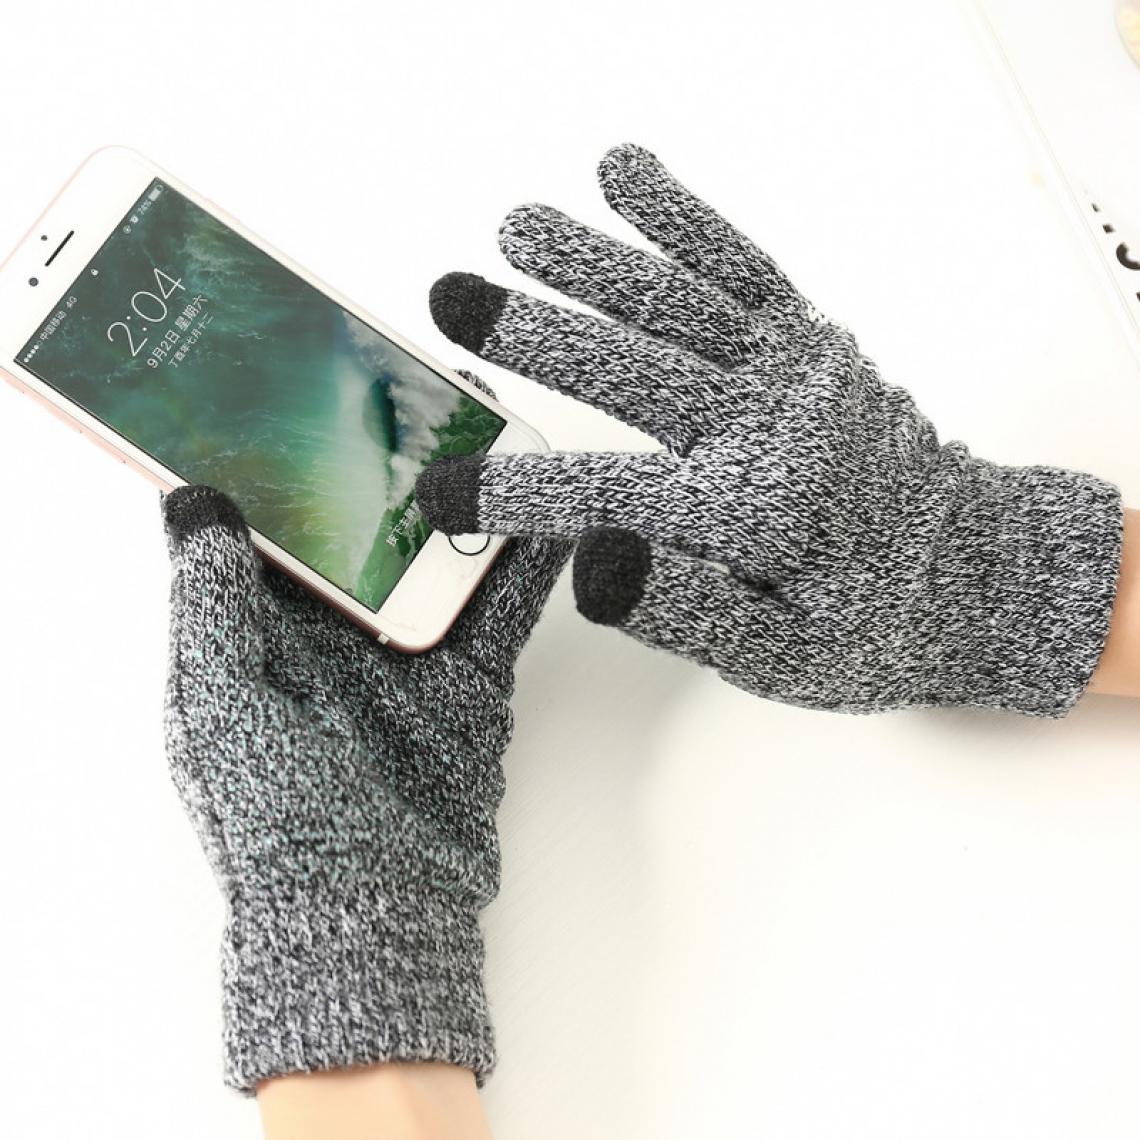 Shot - Gants Homme tactiles pour XIAOMI Mi 10 Smartphone Taille M 3 doigts Hiver (GRIS) - Autres accessoires smartphone